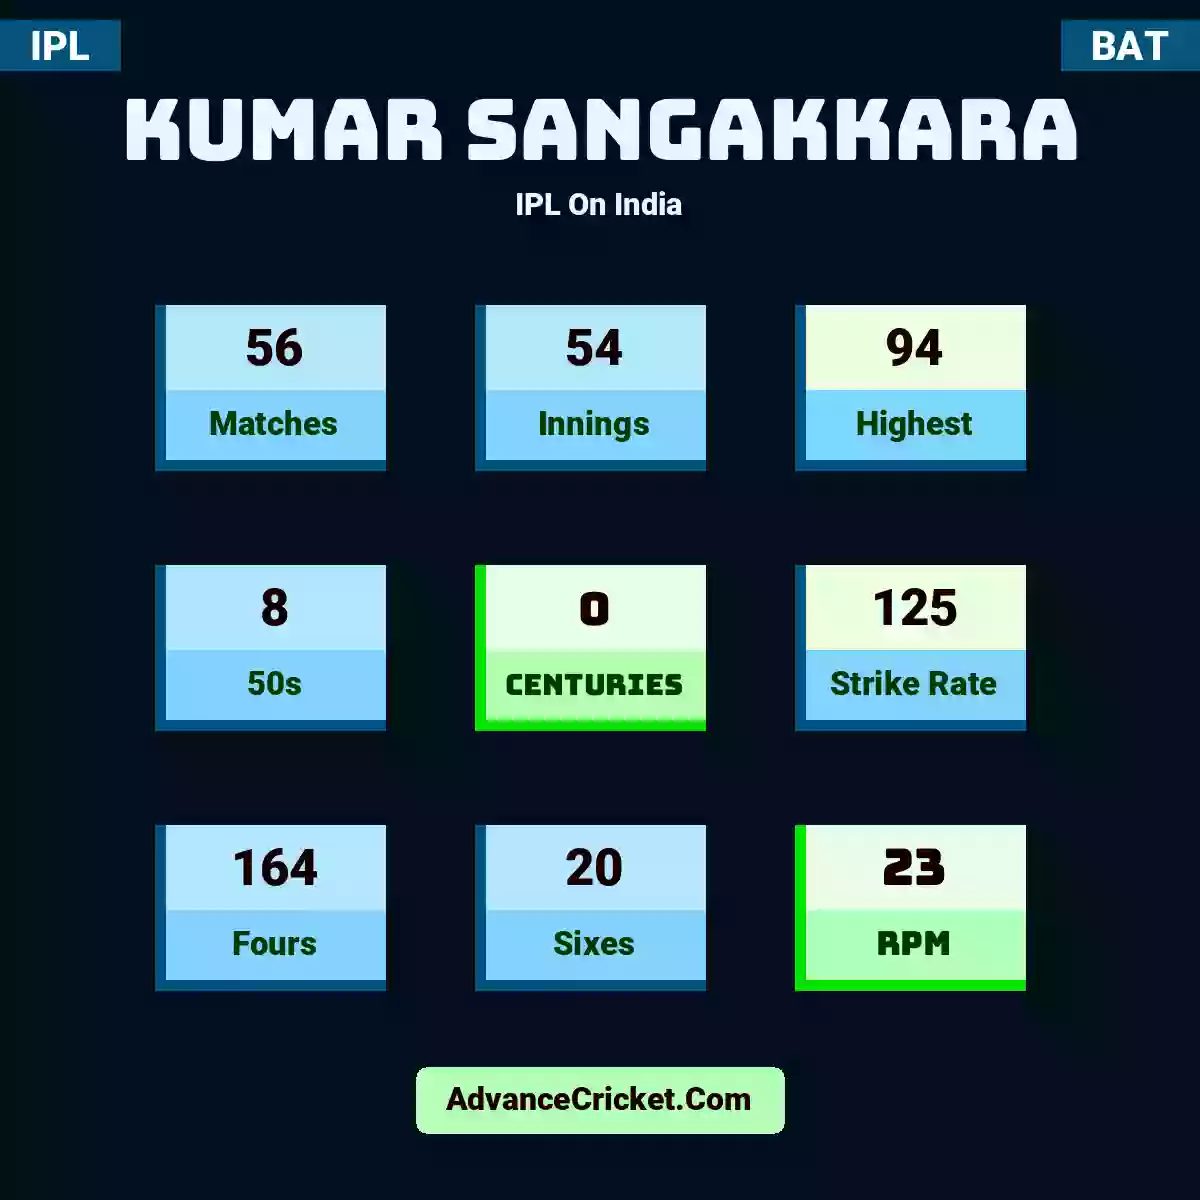 Kumar Sangakkara IPL  On India, Kumar Sangakkara played 56 matches, scored 94 runs as highest, 8 half-centuries, and 0 centuries, with a strike rate of 125. K.Sangakkara hit 164 fours and 20 sixes, with an RPM of 23.